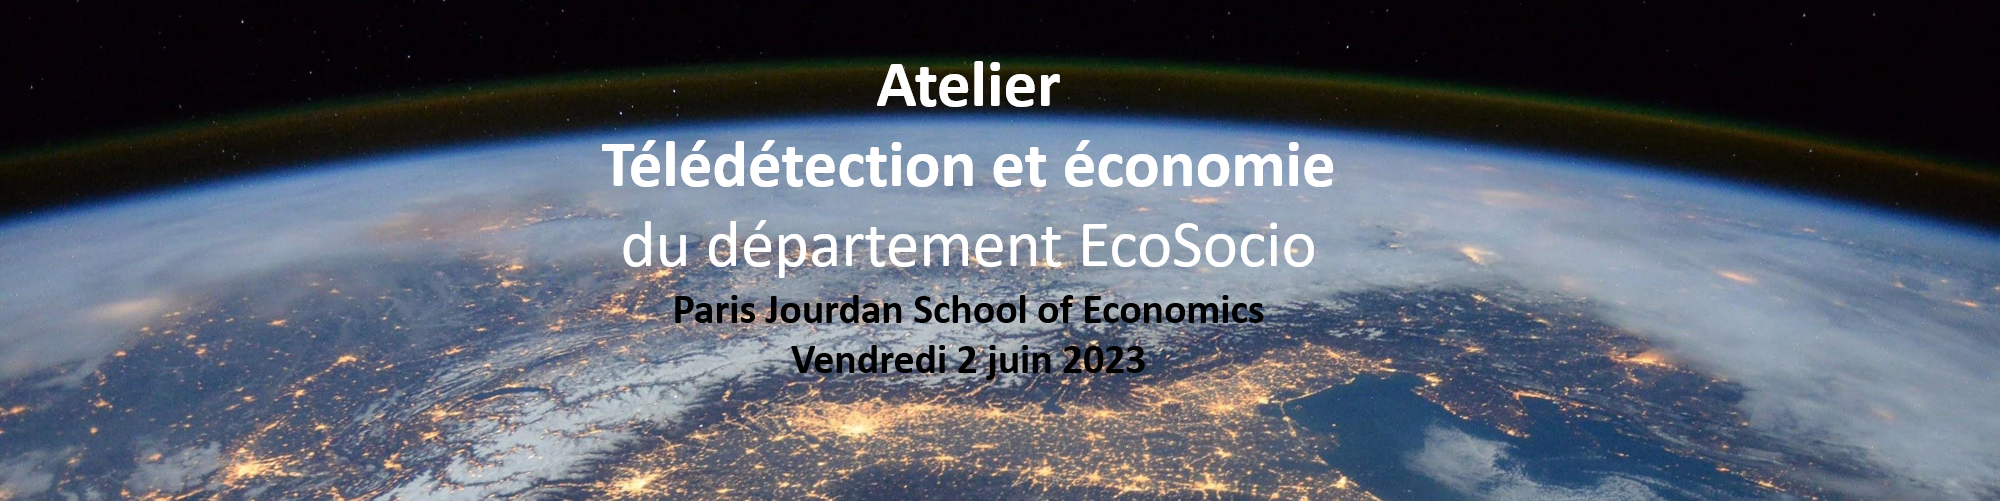 Atelier Télédétection et économie du département EcoSocio